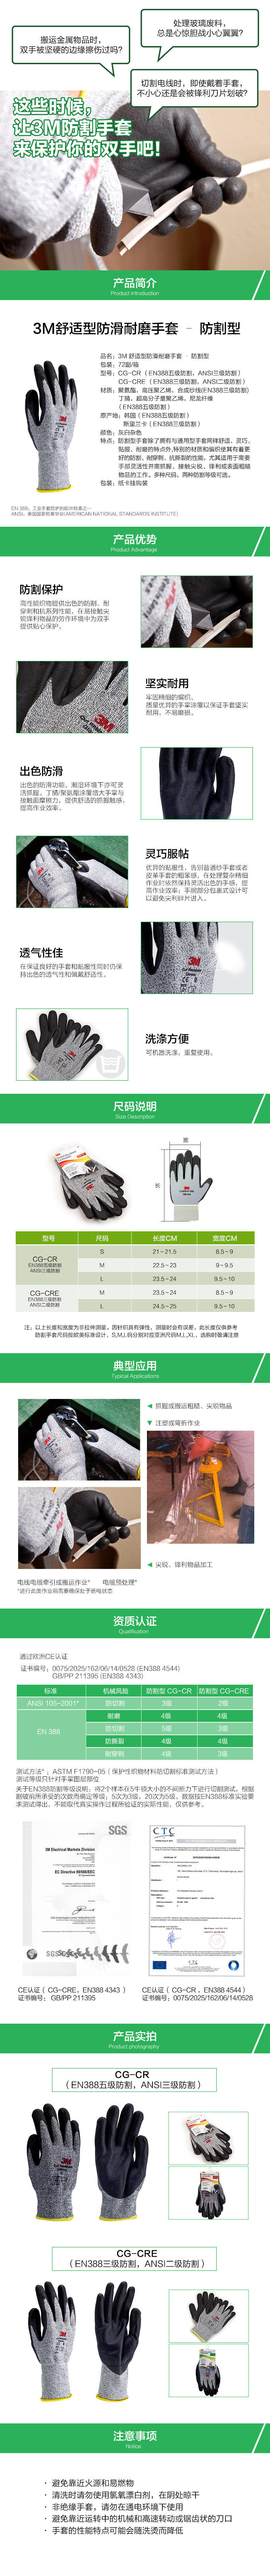 3M 舒适型防滑耐磨手套 防割型 L2 M 手套（货号80611613573）（CG-CRE 欧标3级防割 美标2级防割）